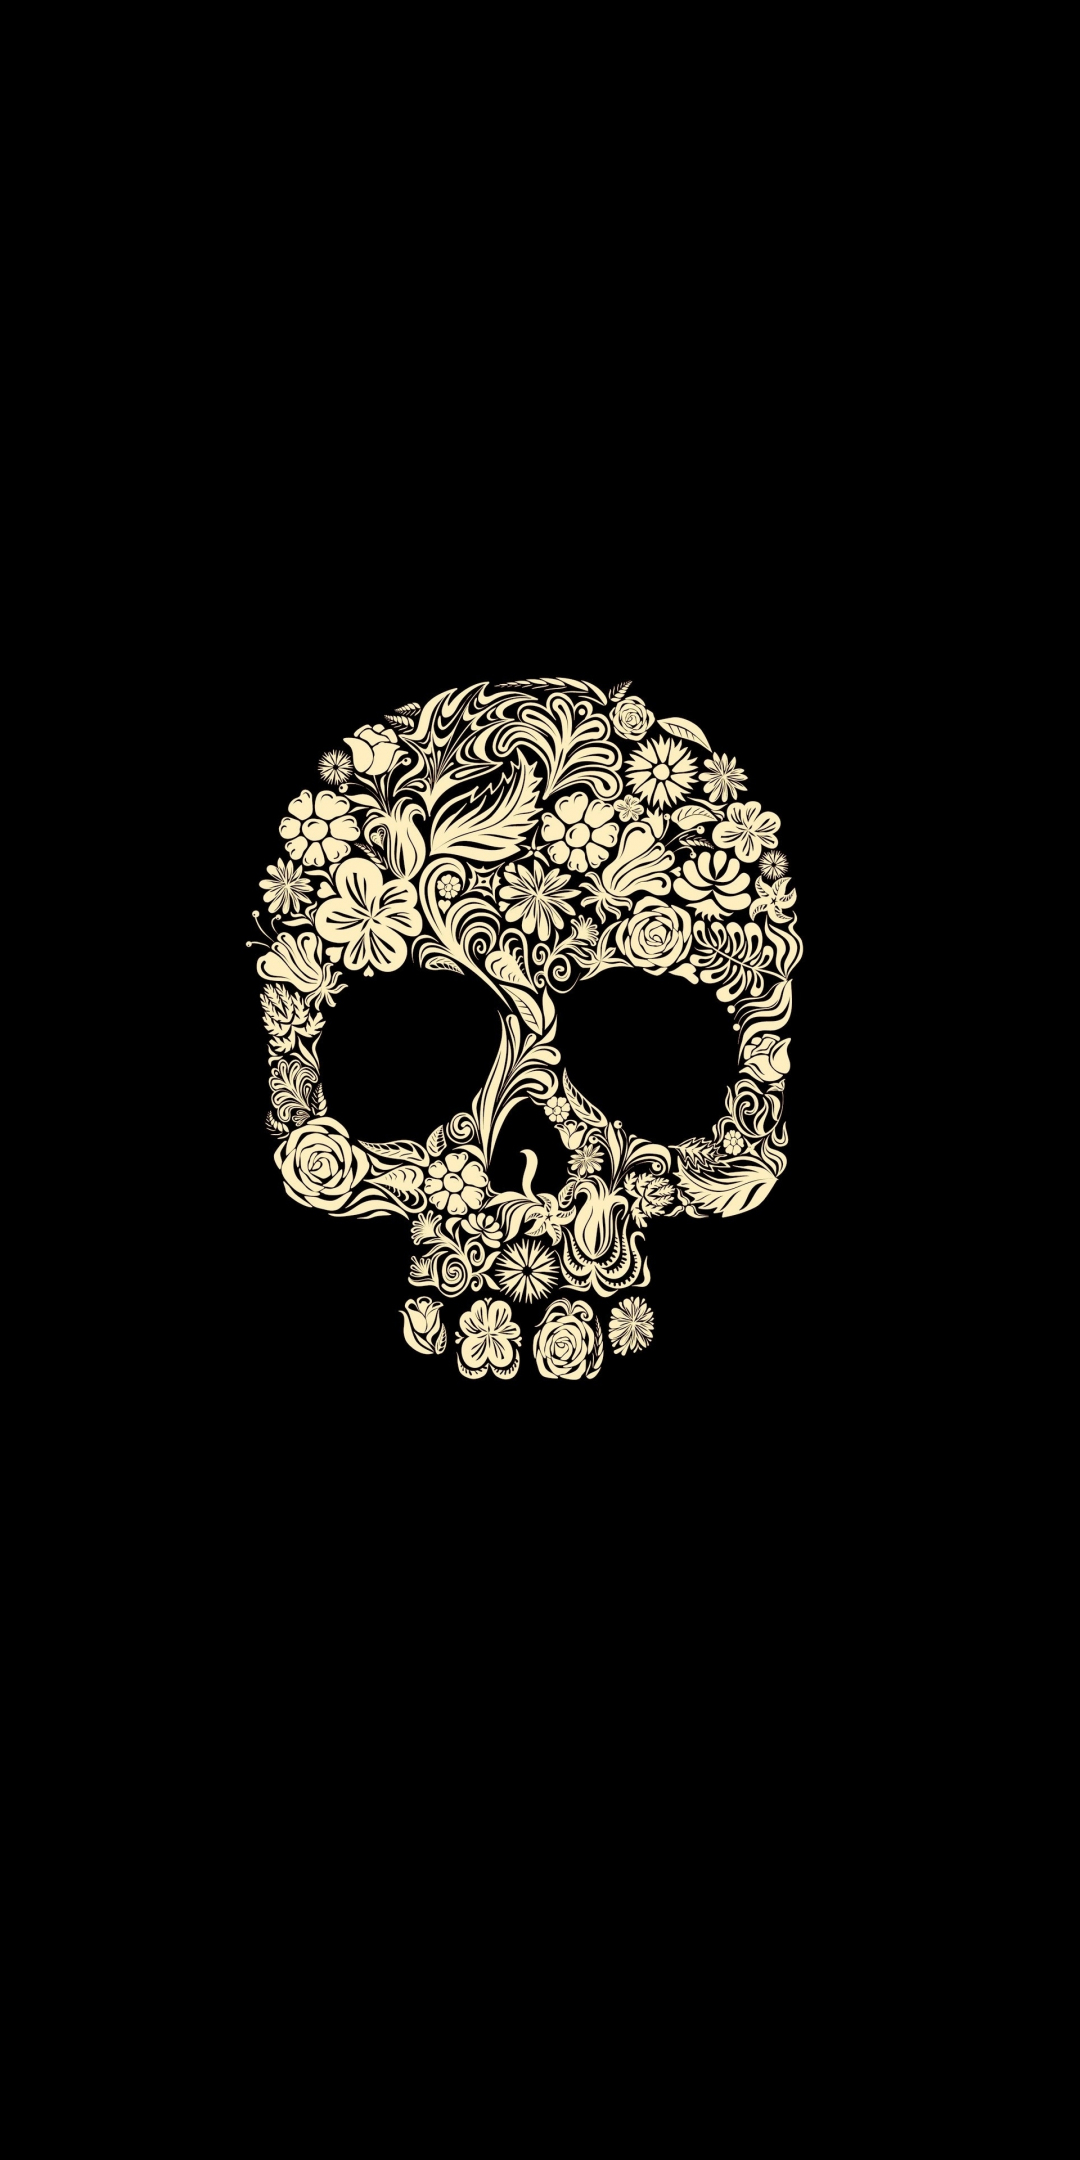 Flower skull, minimal, 1080x2160 wallpaper